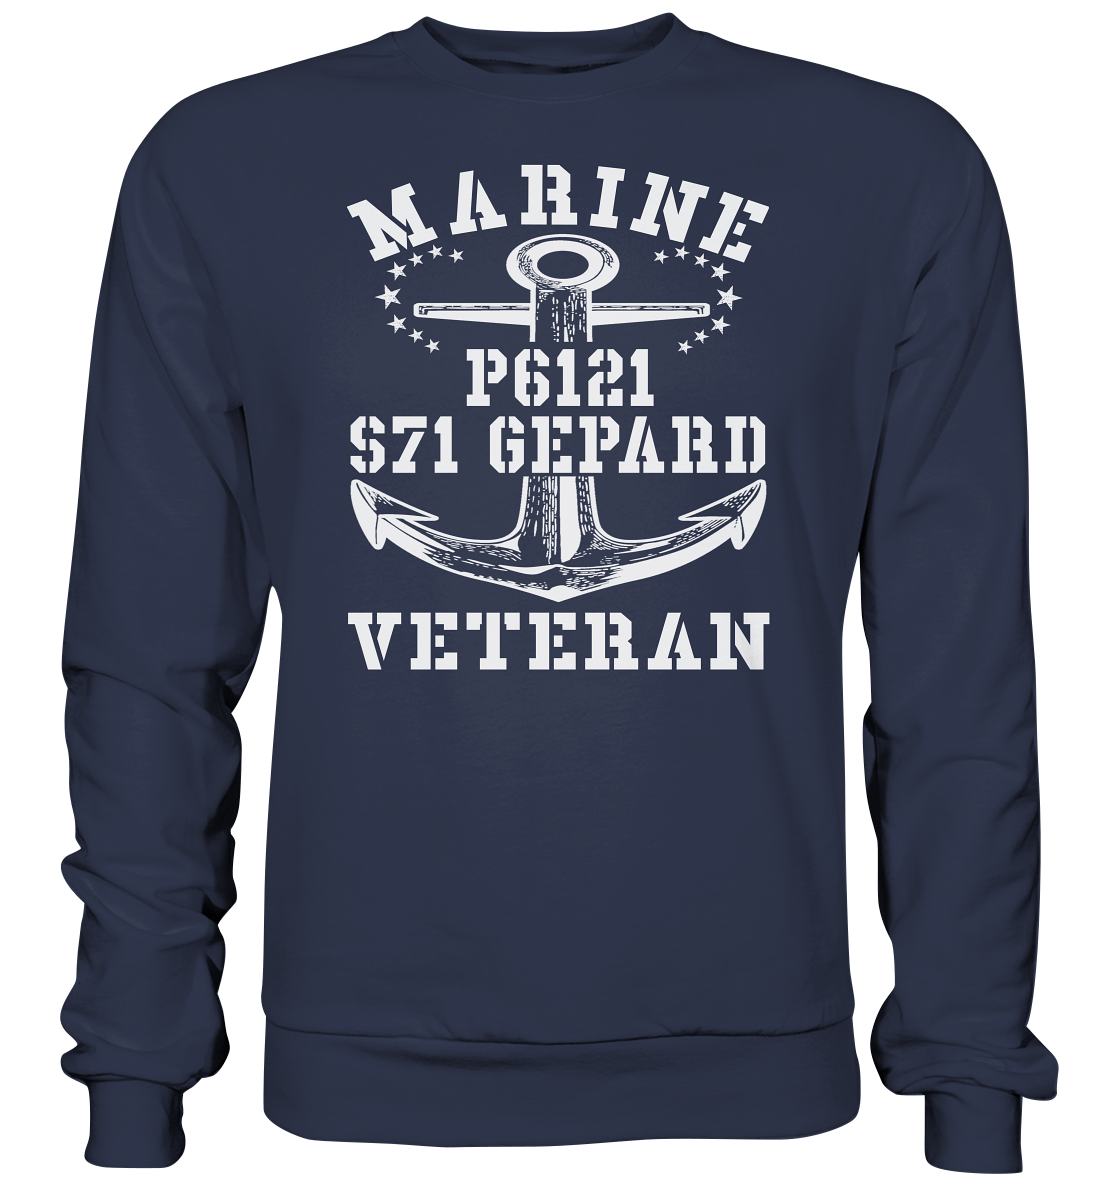 FK-Schnellboot P6121 GEPARD Marine Veteran - Premium Sweatshirt